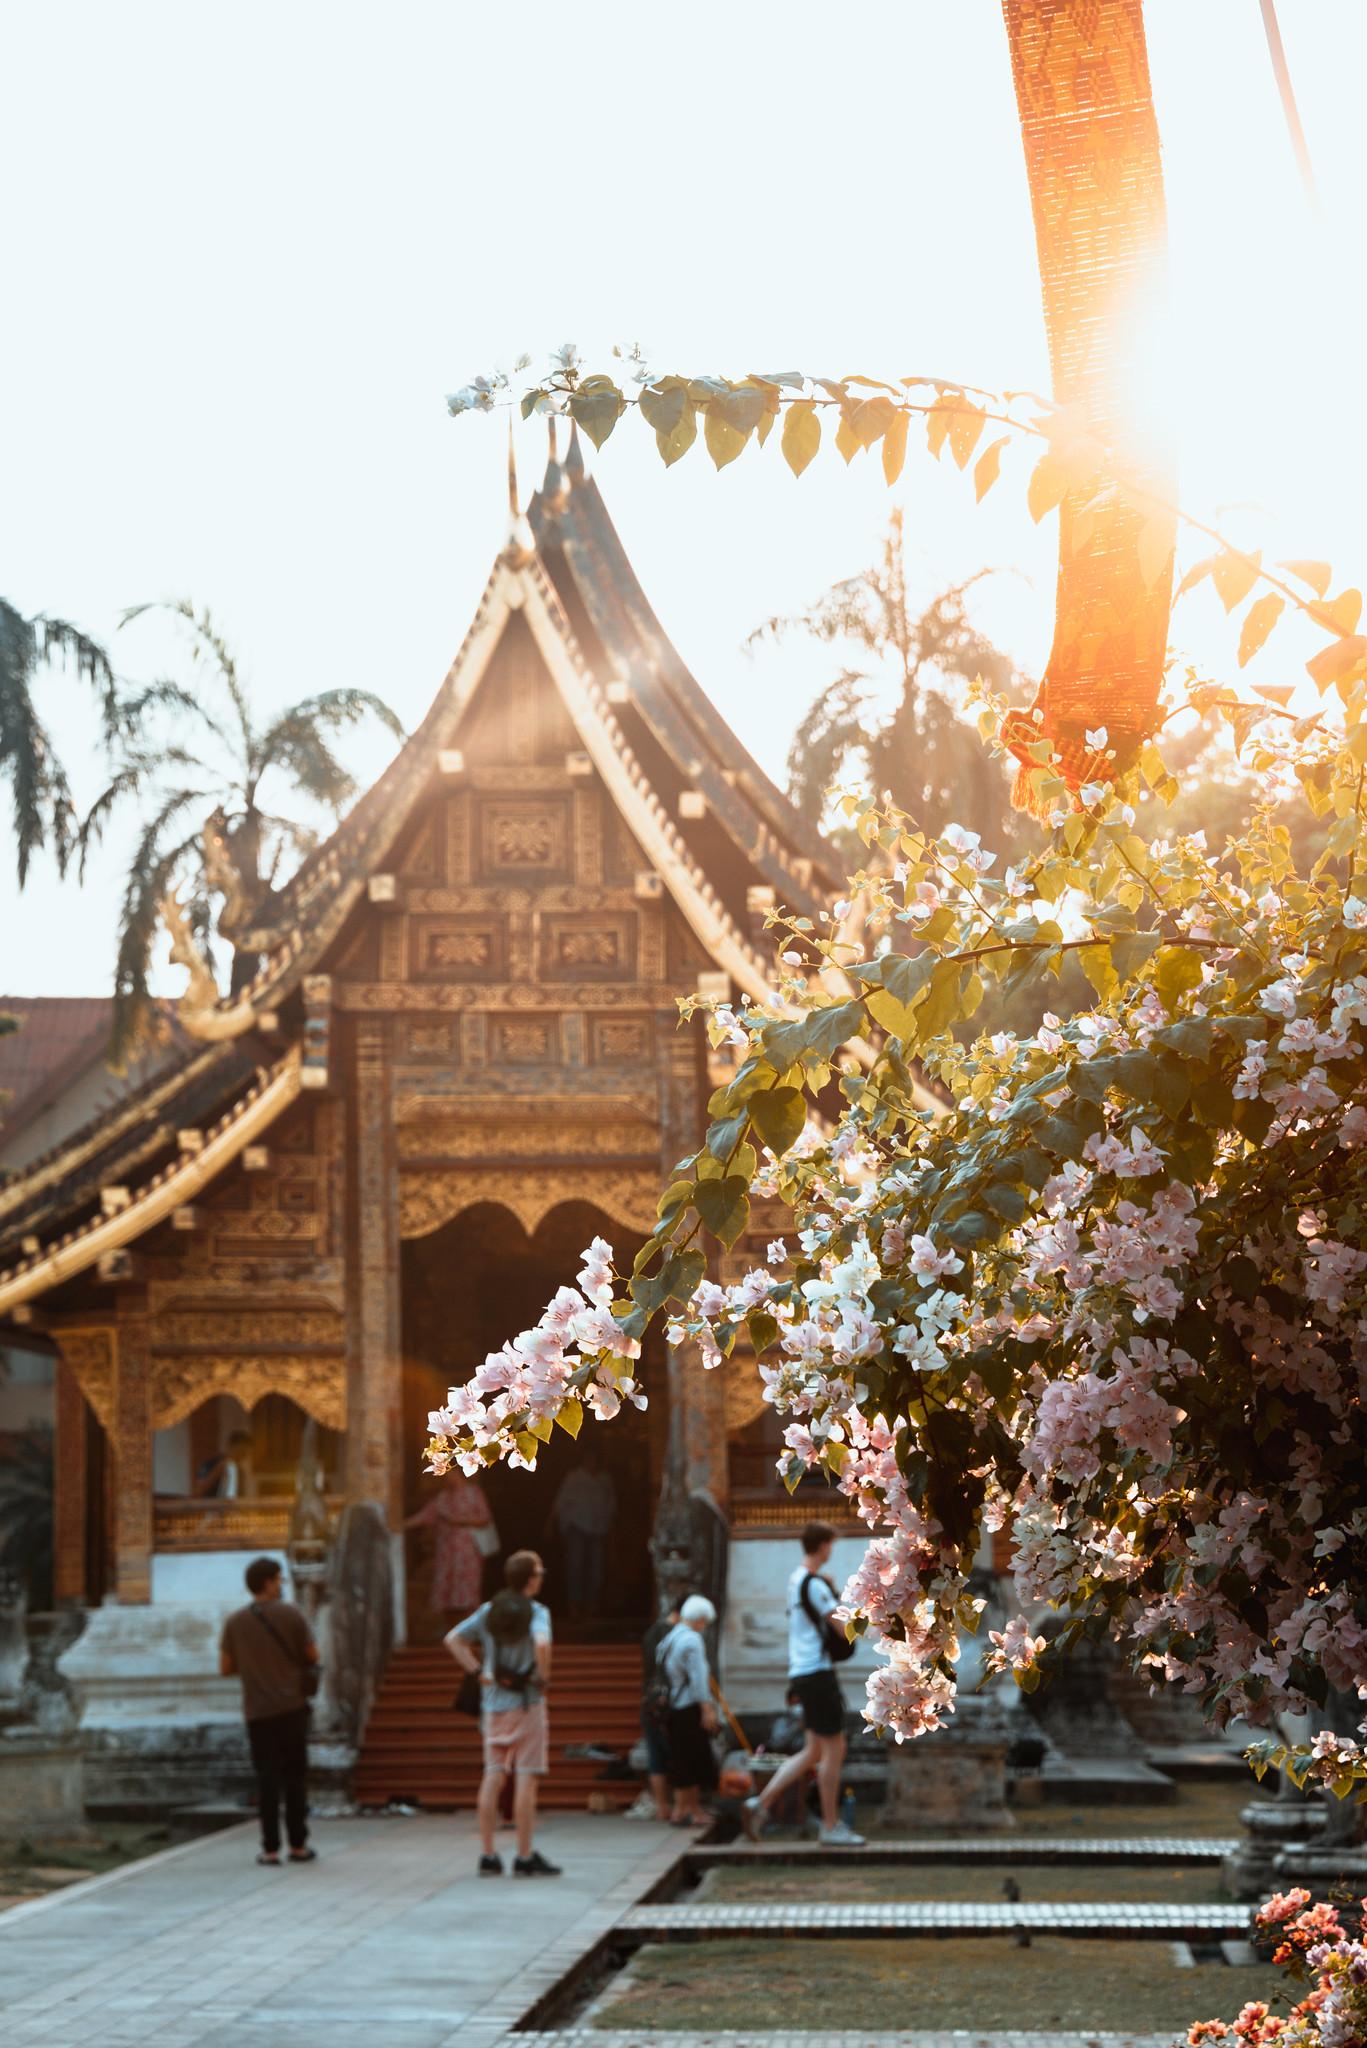 Inside Wat Phra Singh Precinct